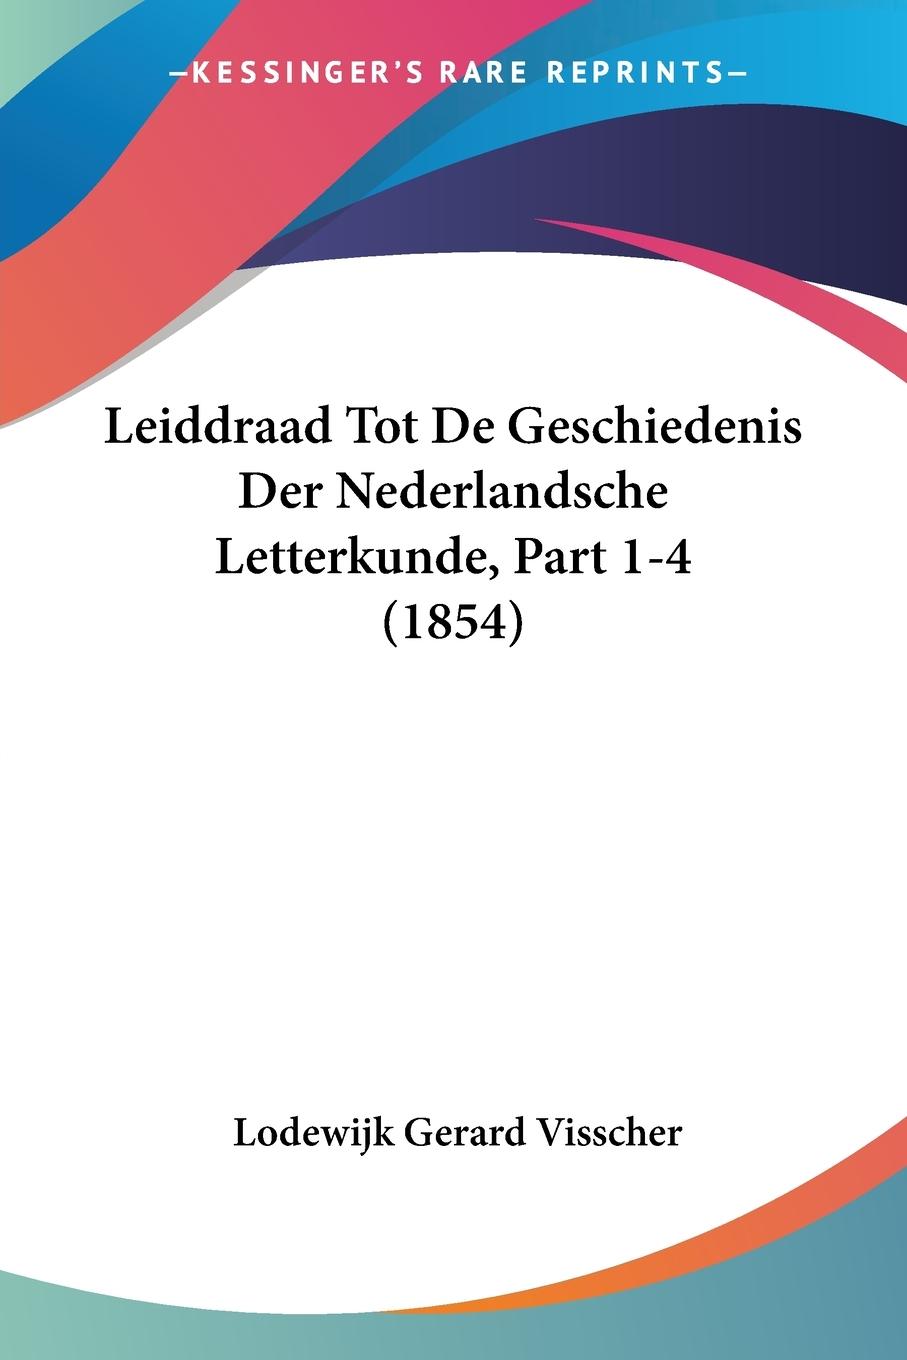 Leiddraad Tot De Geschiedenis Der Nederlandsche Letterkunde, Part 1-4 (1854) - Visscher, Lodewijk Gerard